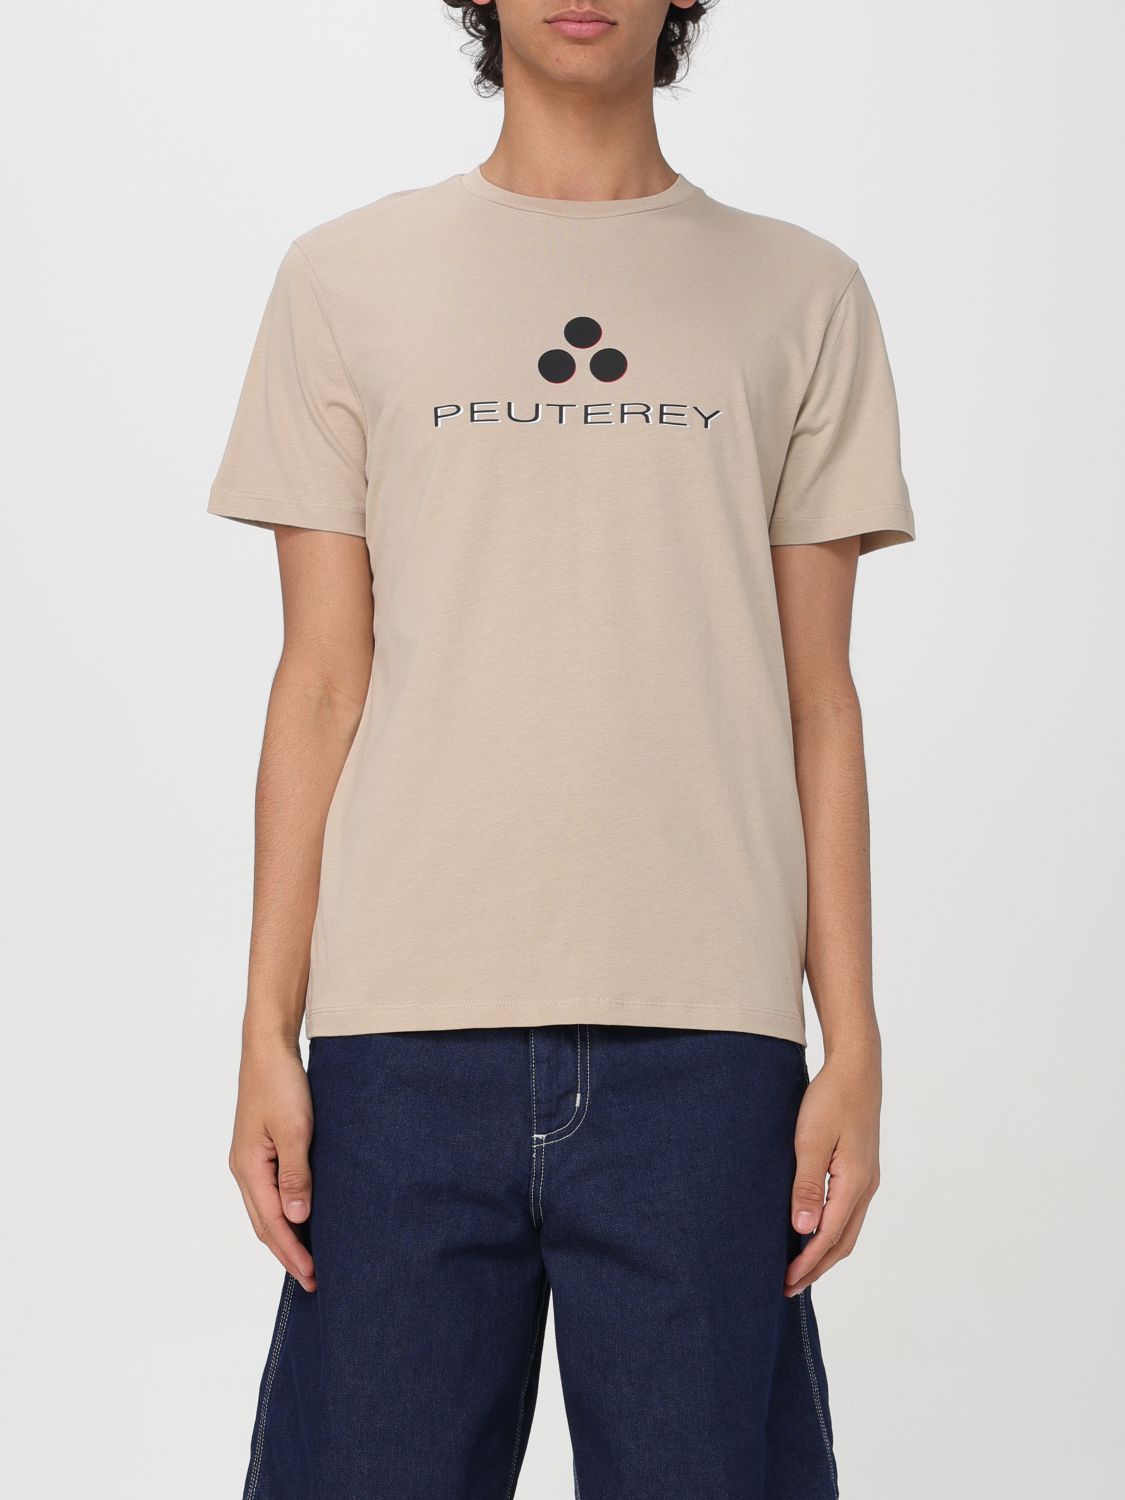 Peuterey T-Shirt PEUTEREY Men colour Dove Grey